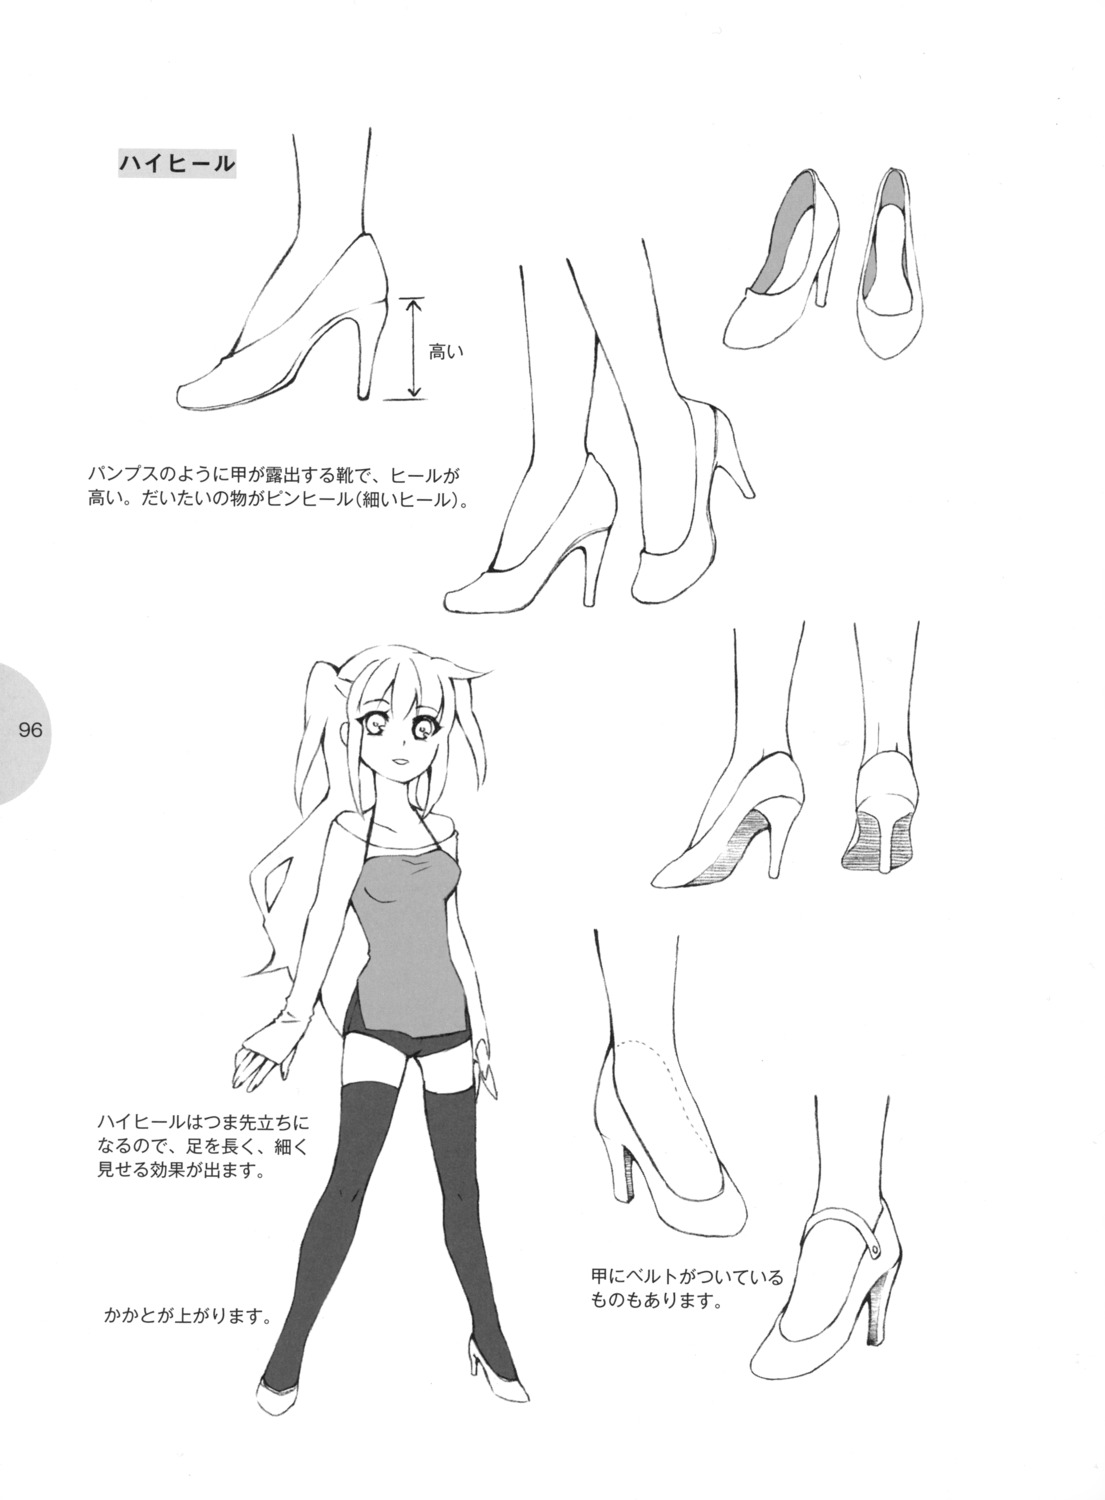 Обувь аниме девушек